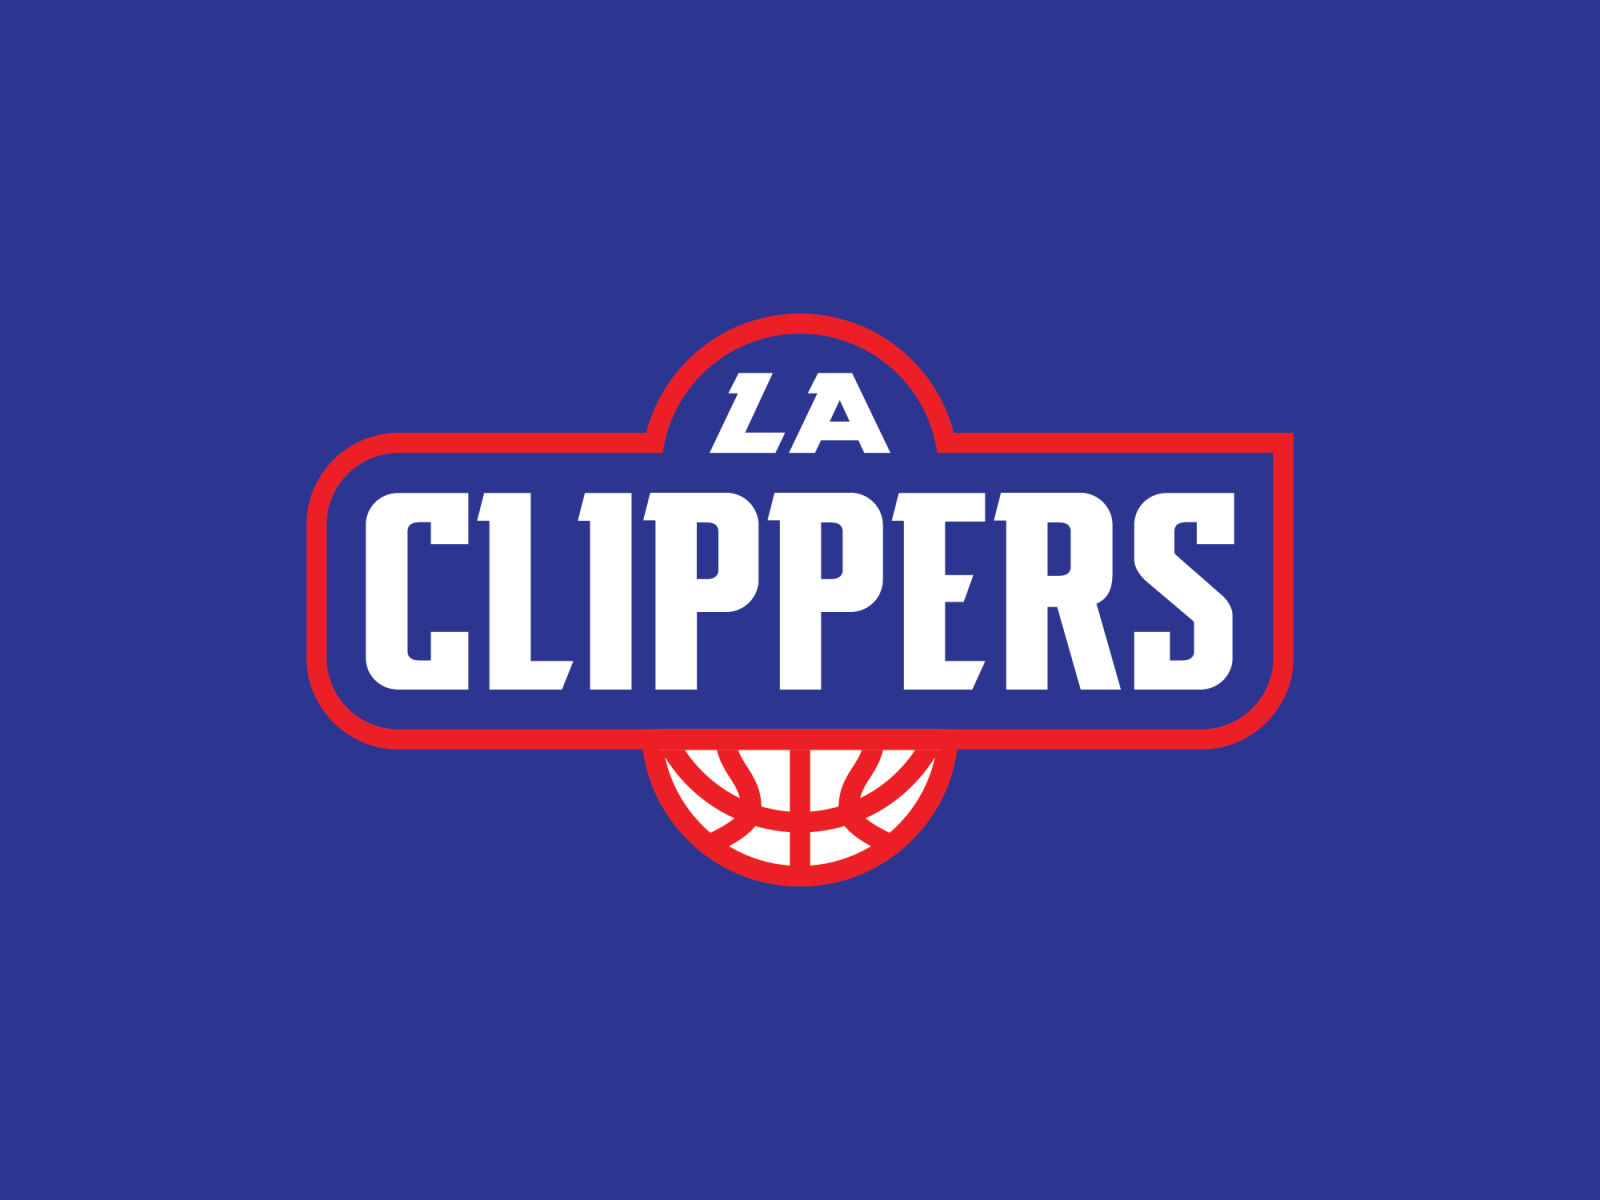 LA Clippers Logo Idea by Daniel Margheim on Dribbble